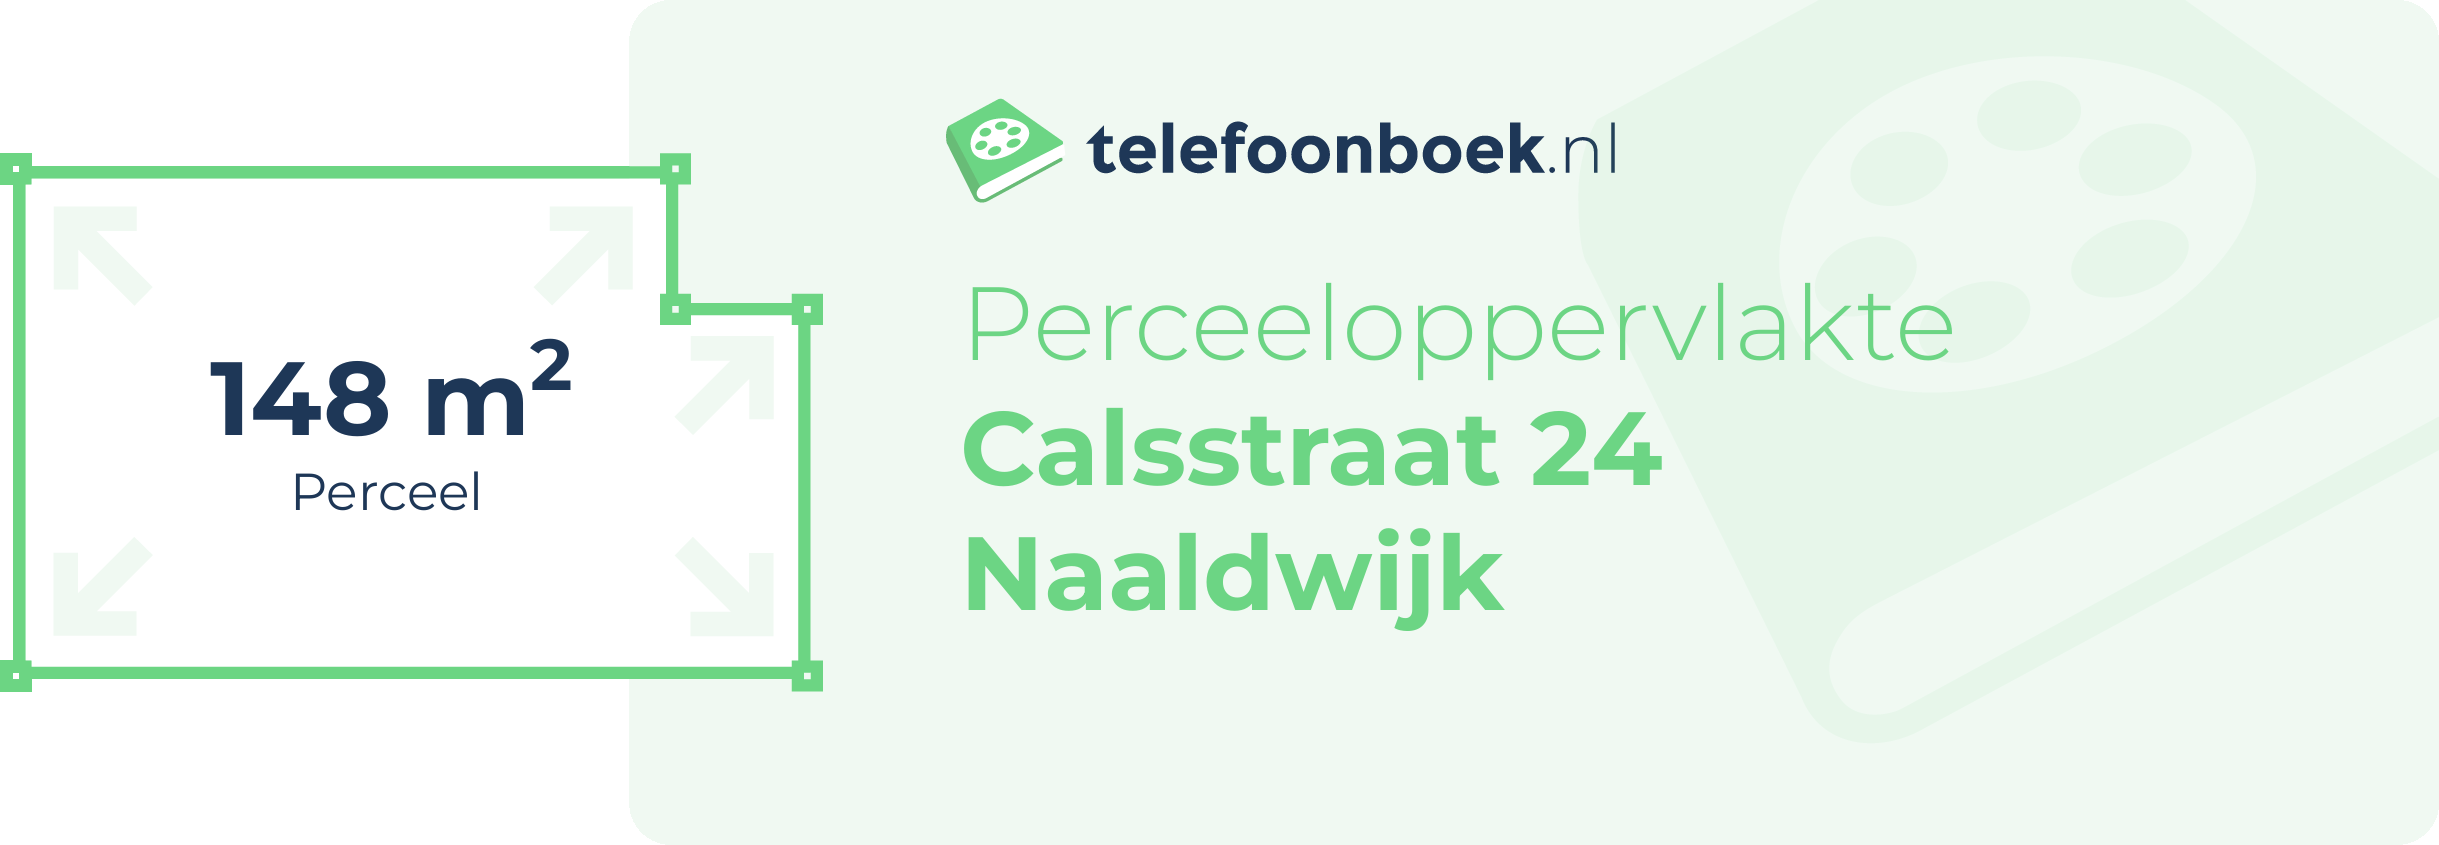 Perceeloppervlakte Calsstraat 24 Naaldwijk